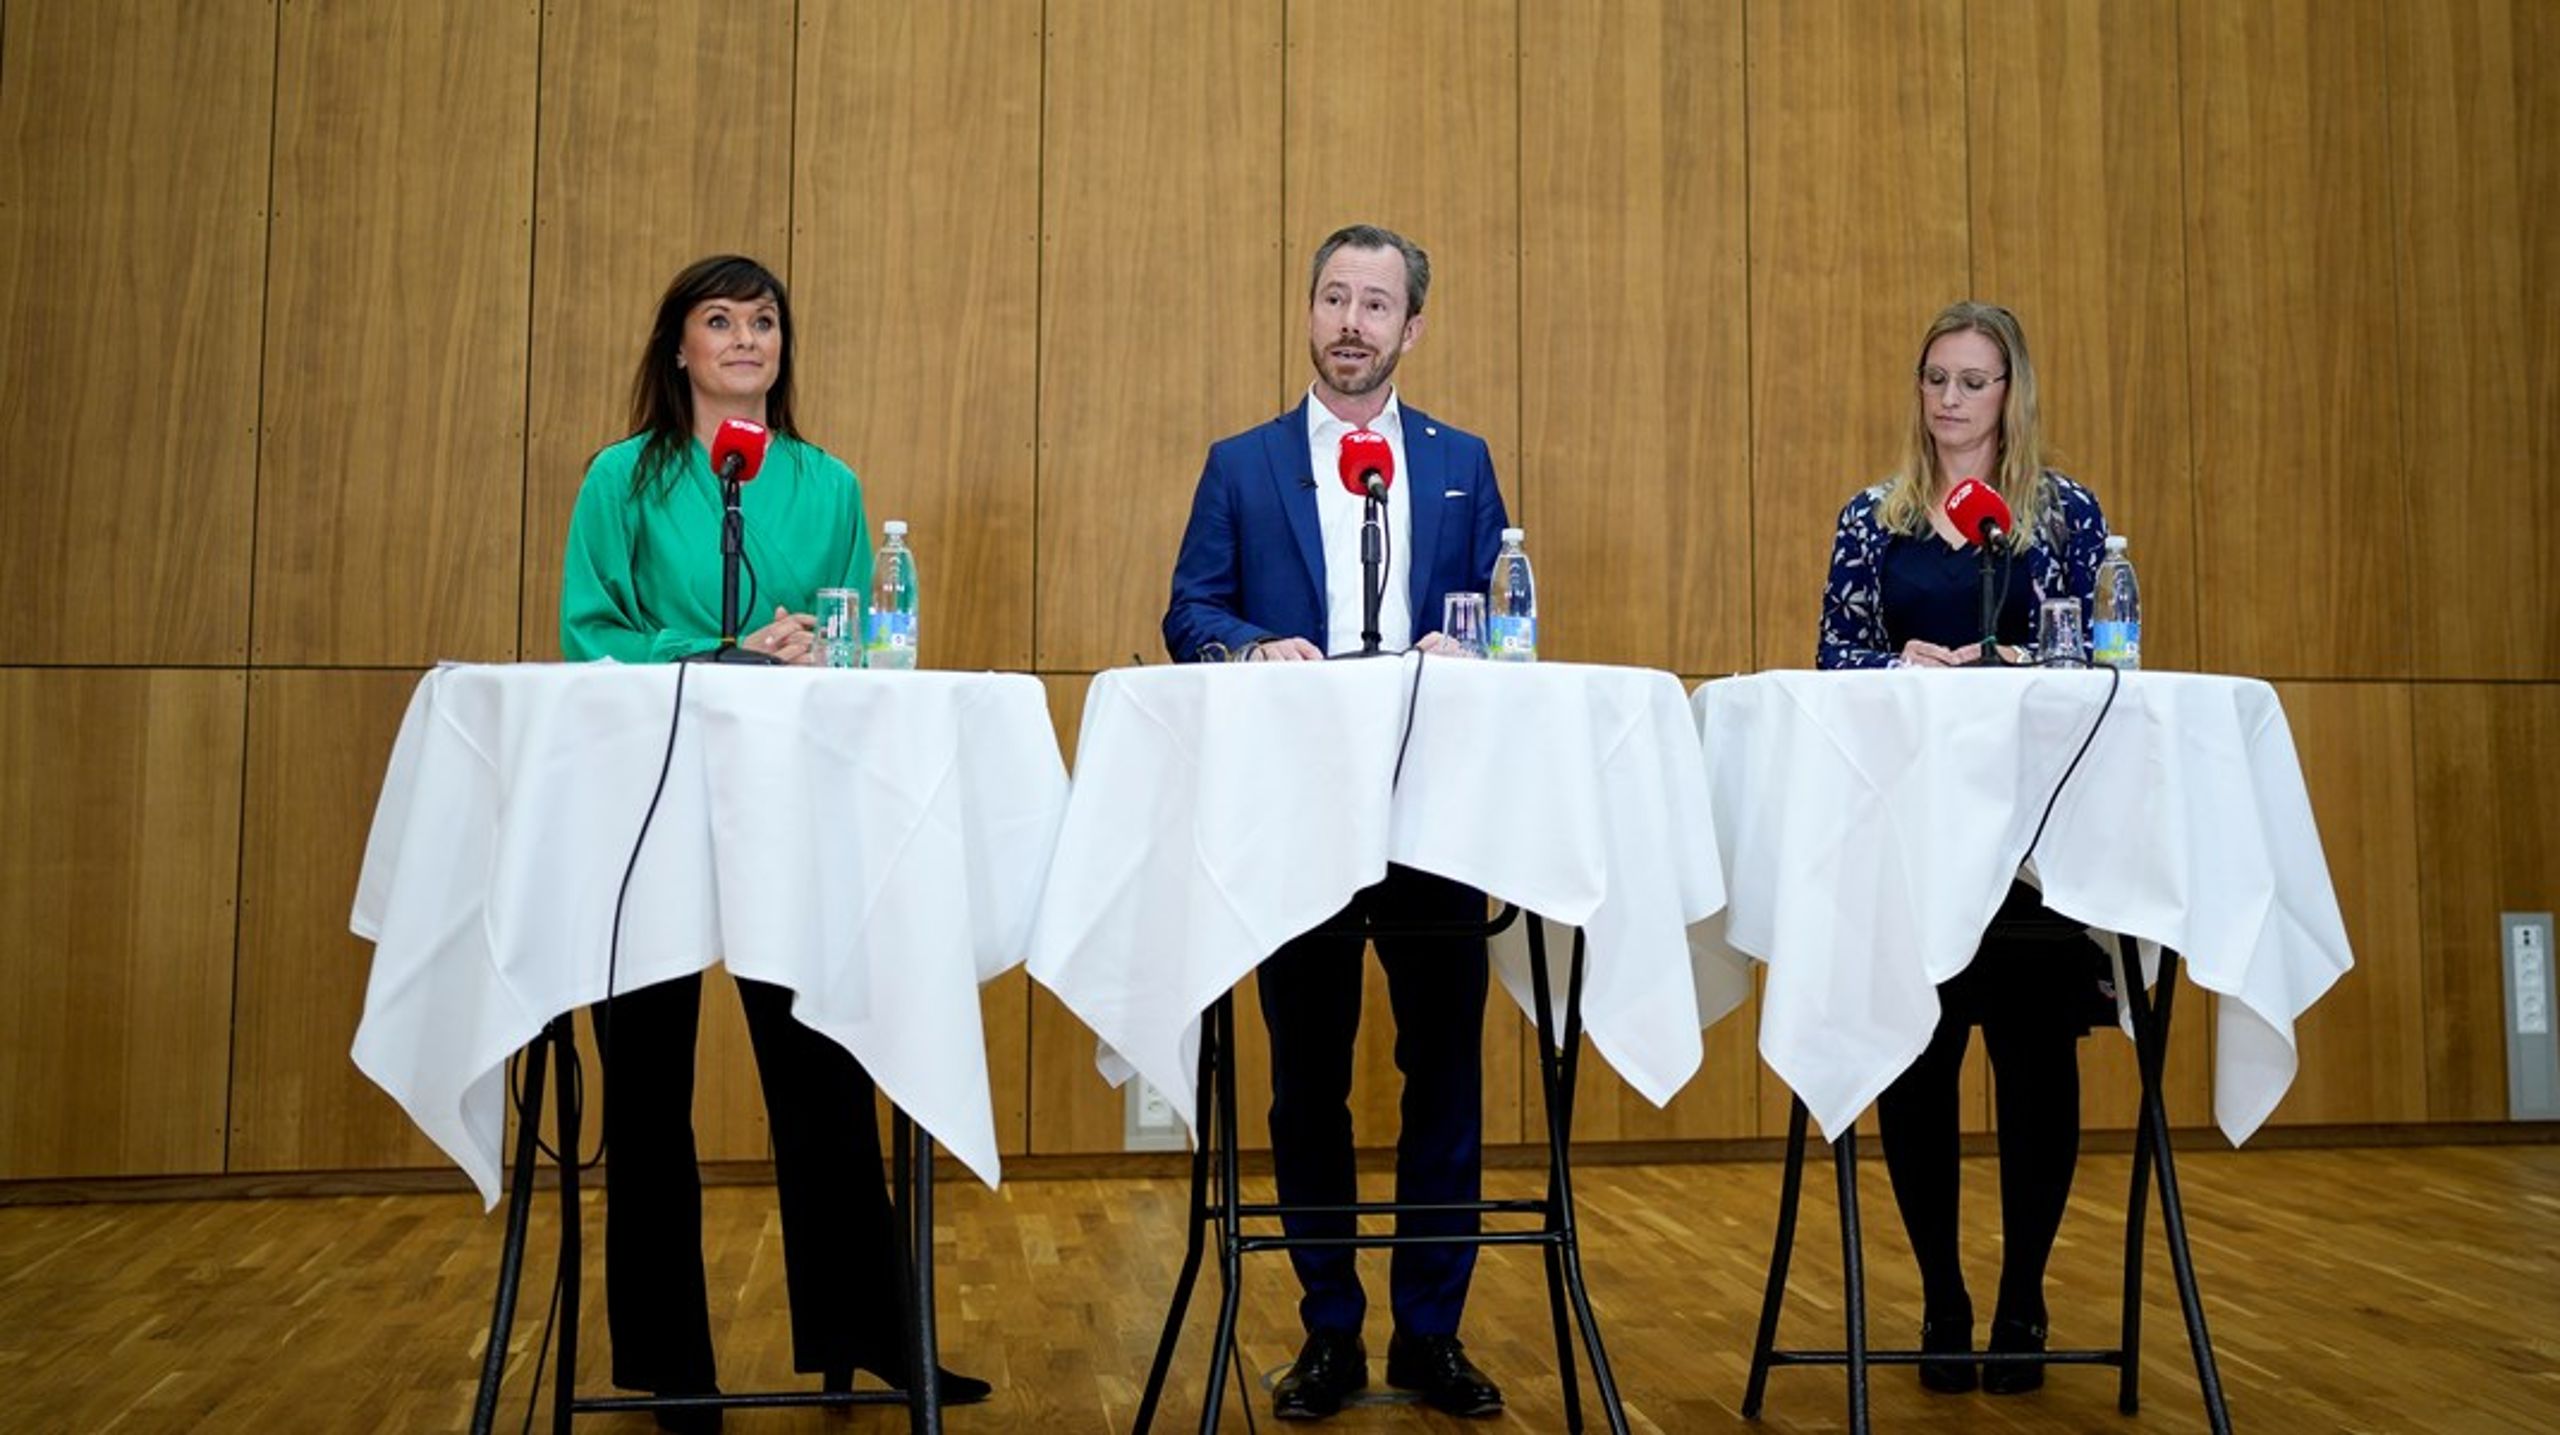 Torsdag præsenterede Venstre et nyt sundhedsudspil på Esbjerg Sygehus. Fra venstre: Politisk ordfører Sophie Løhde, formand Jakob Ellemann-Jensen og næstformand Stephanie Lose.